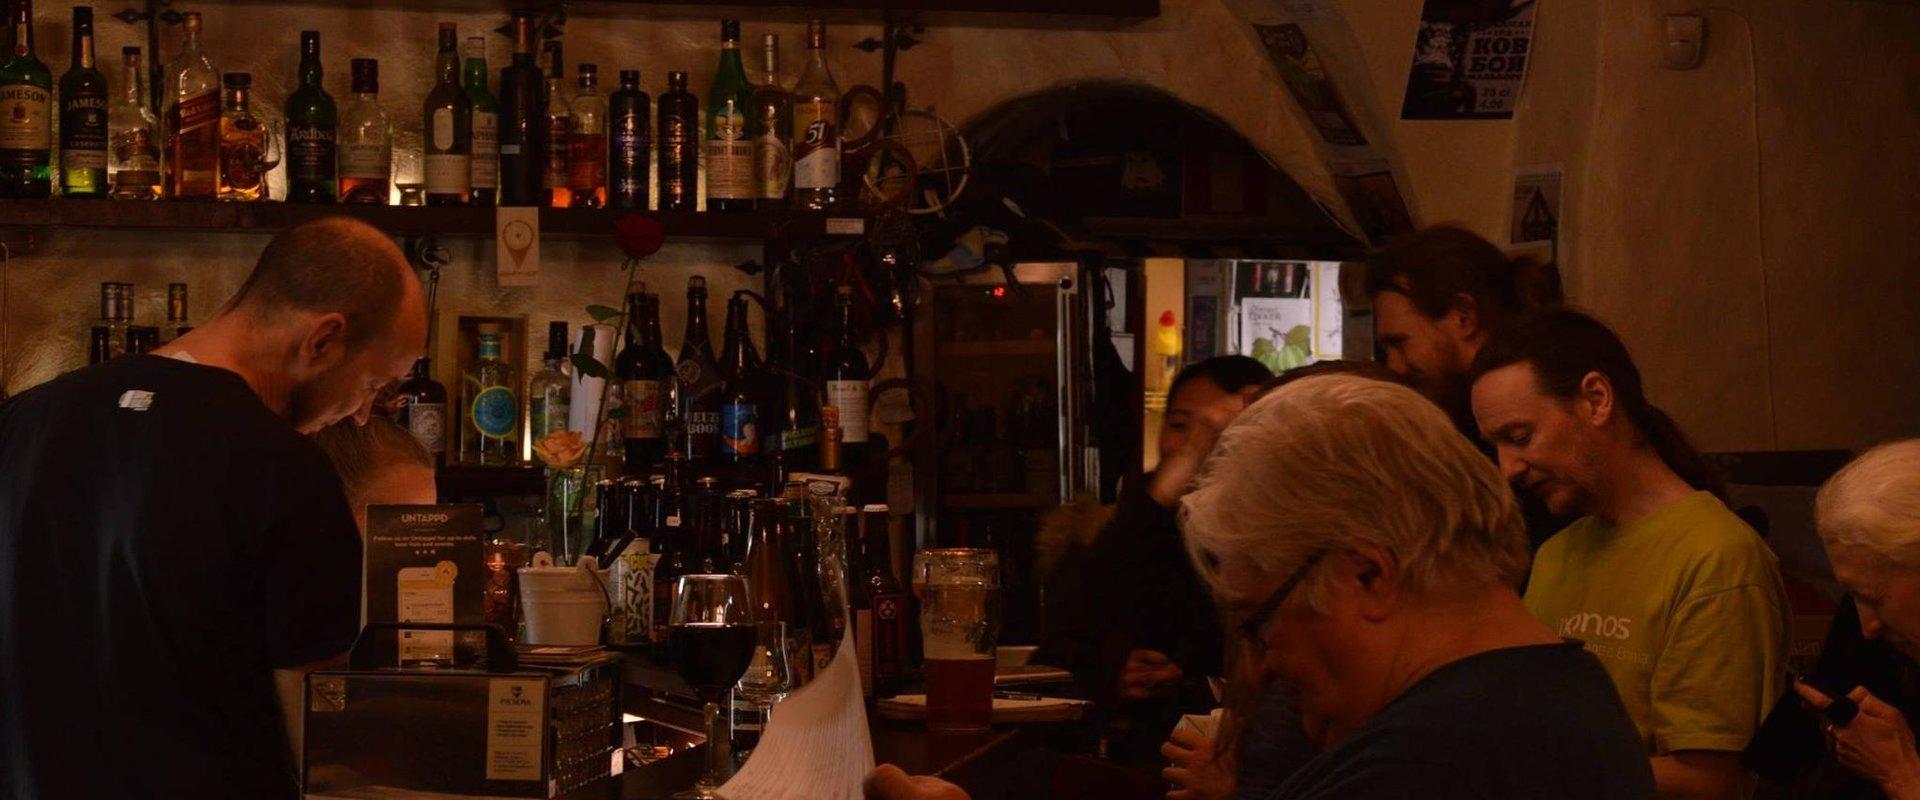 Tallinnan vanhassa kaupungissa sinua odottaa viihtyisä oluisiin keskittynyt baari, jonka vaatimattomalta takalliselta baaritiskiltä löytyy laaja valik